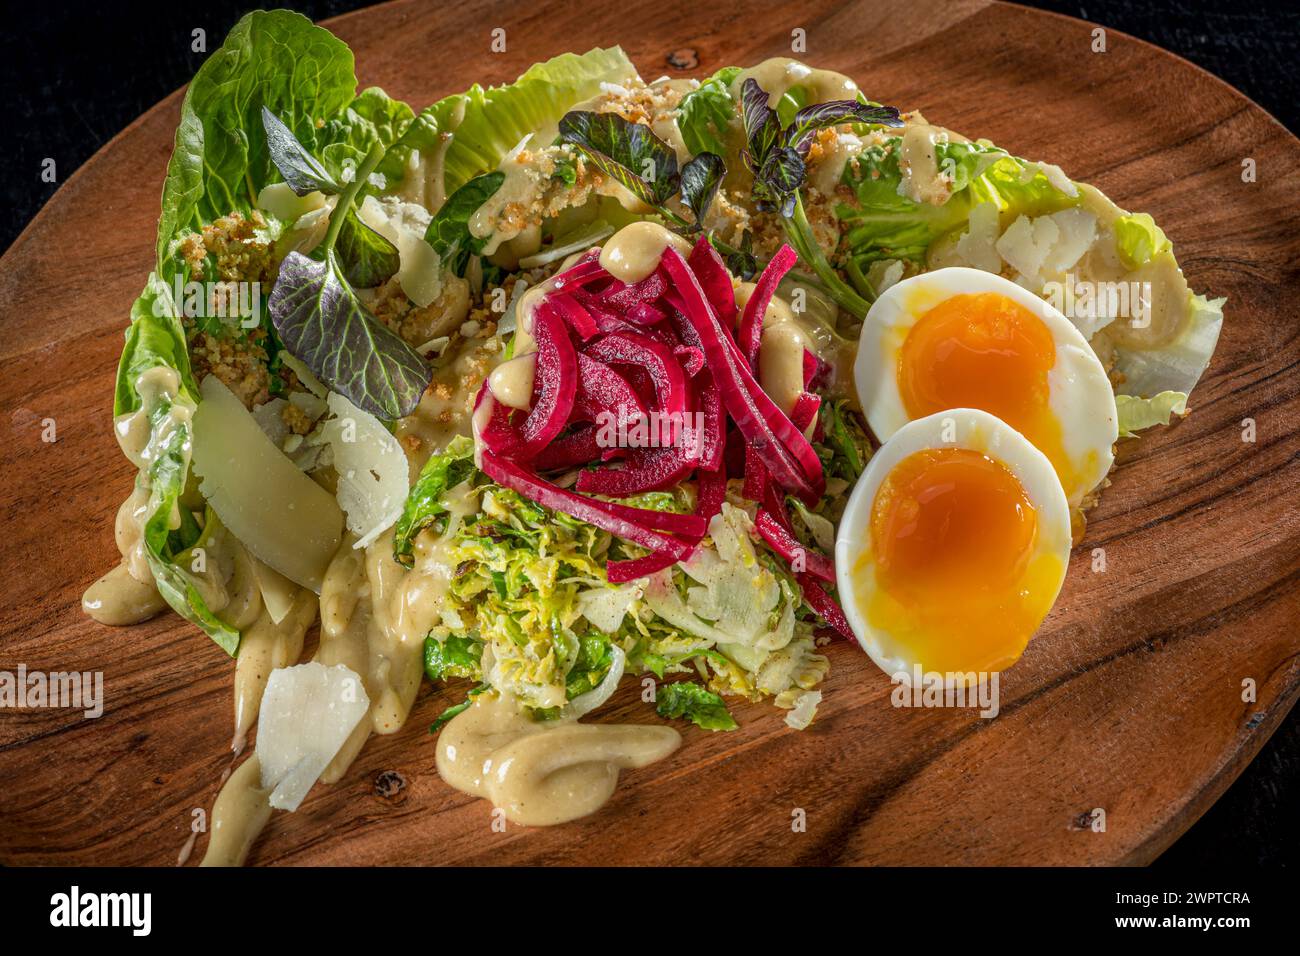 Salade sur assiette en bois avec oeuf dur mou Banque D'Images